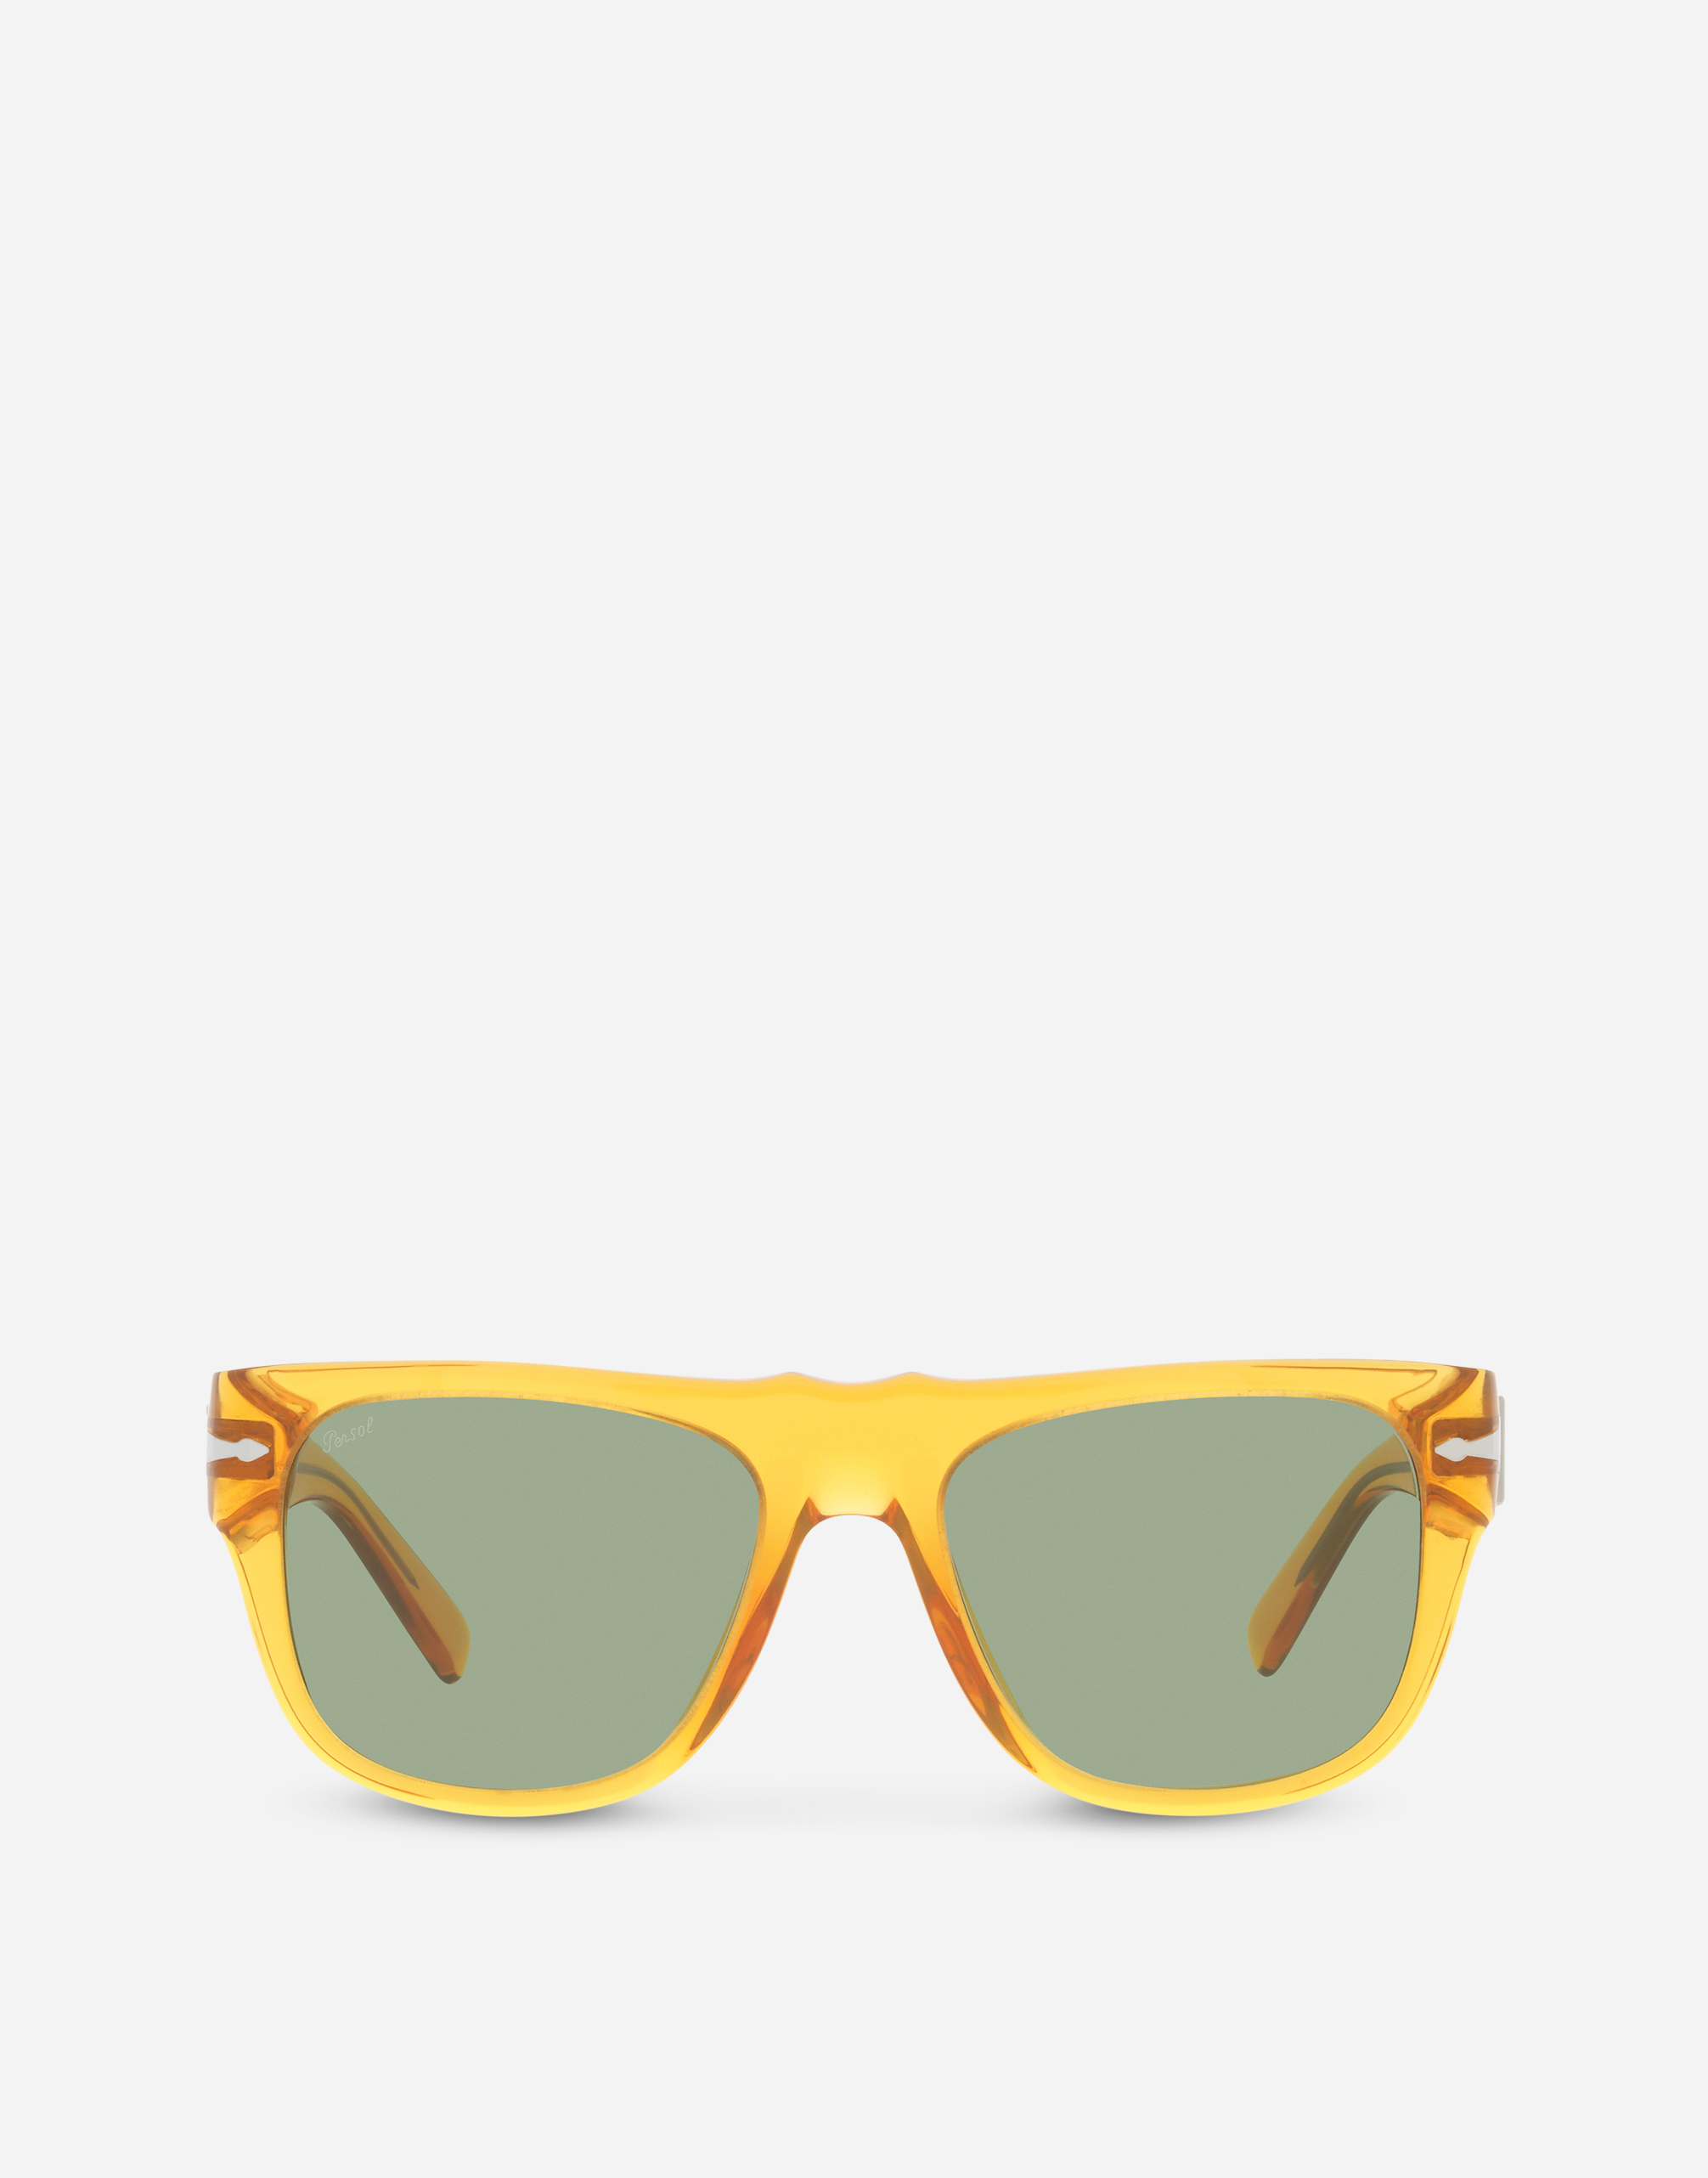 Dolce&Gabbana x Persol sunglasses in transparent orange